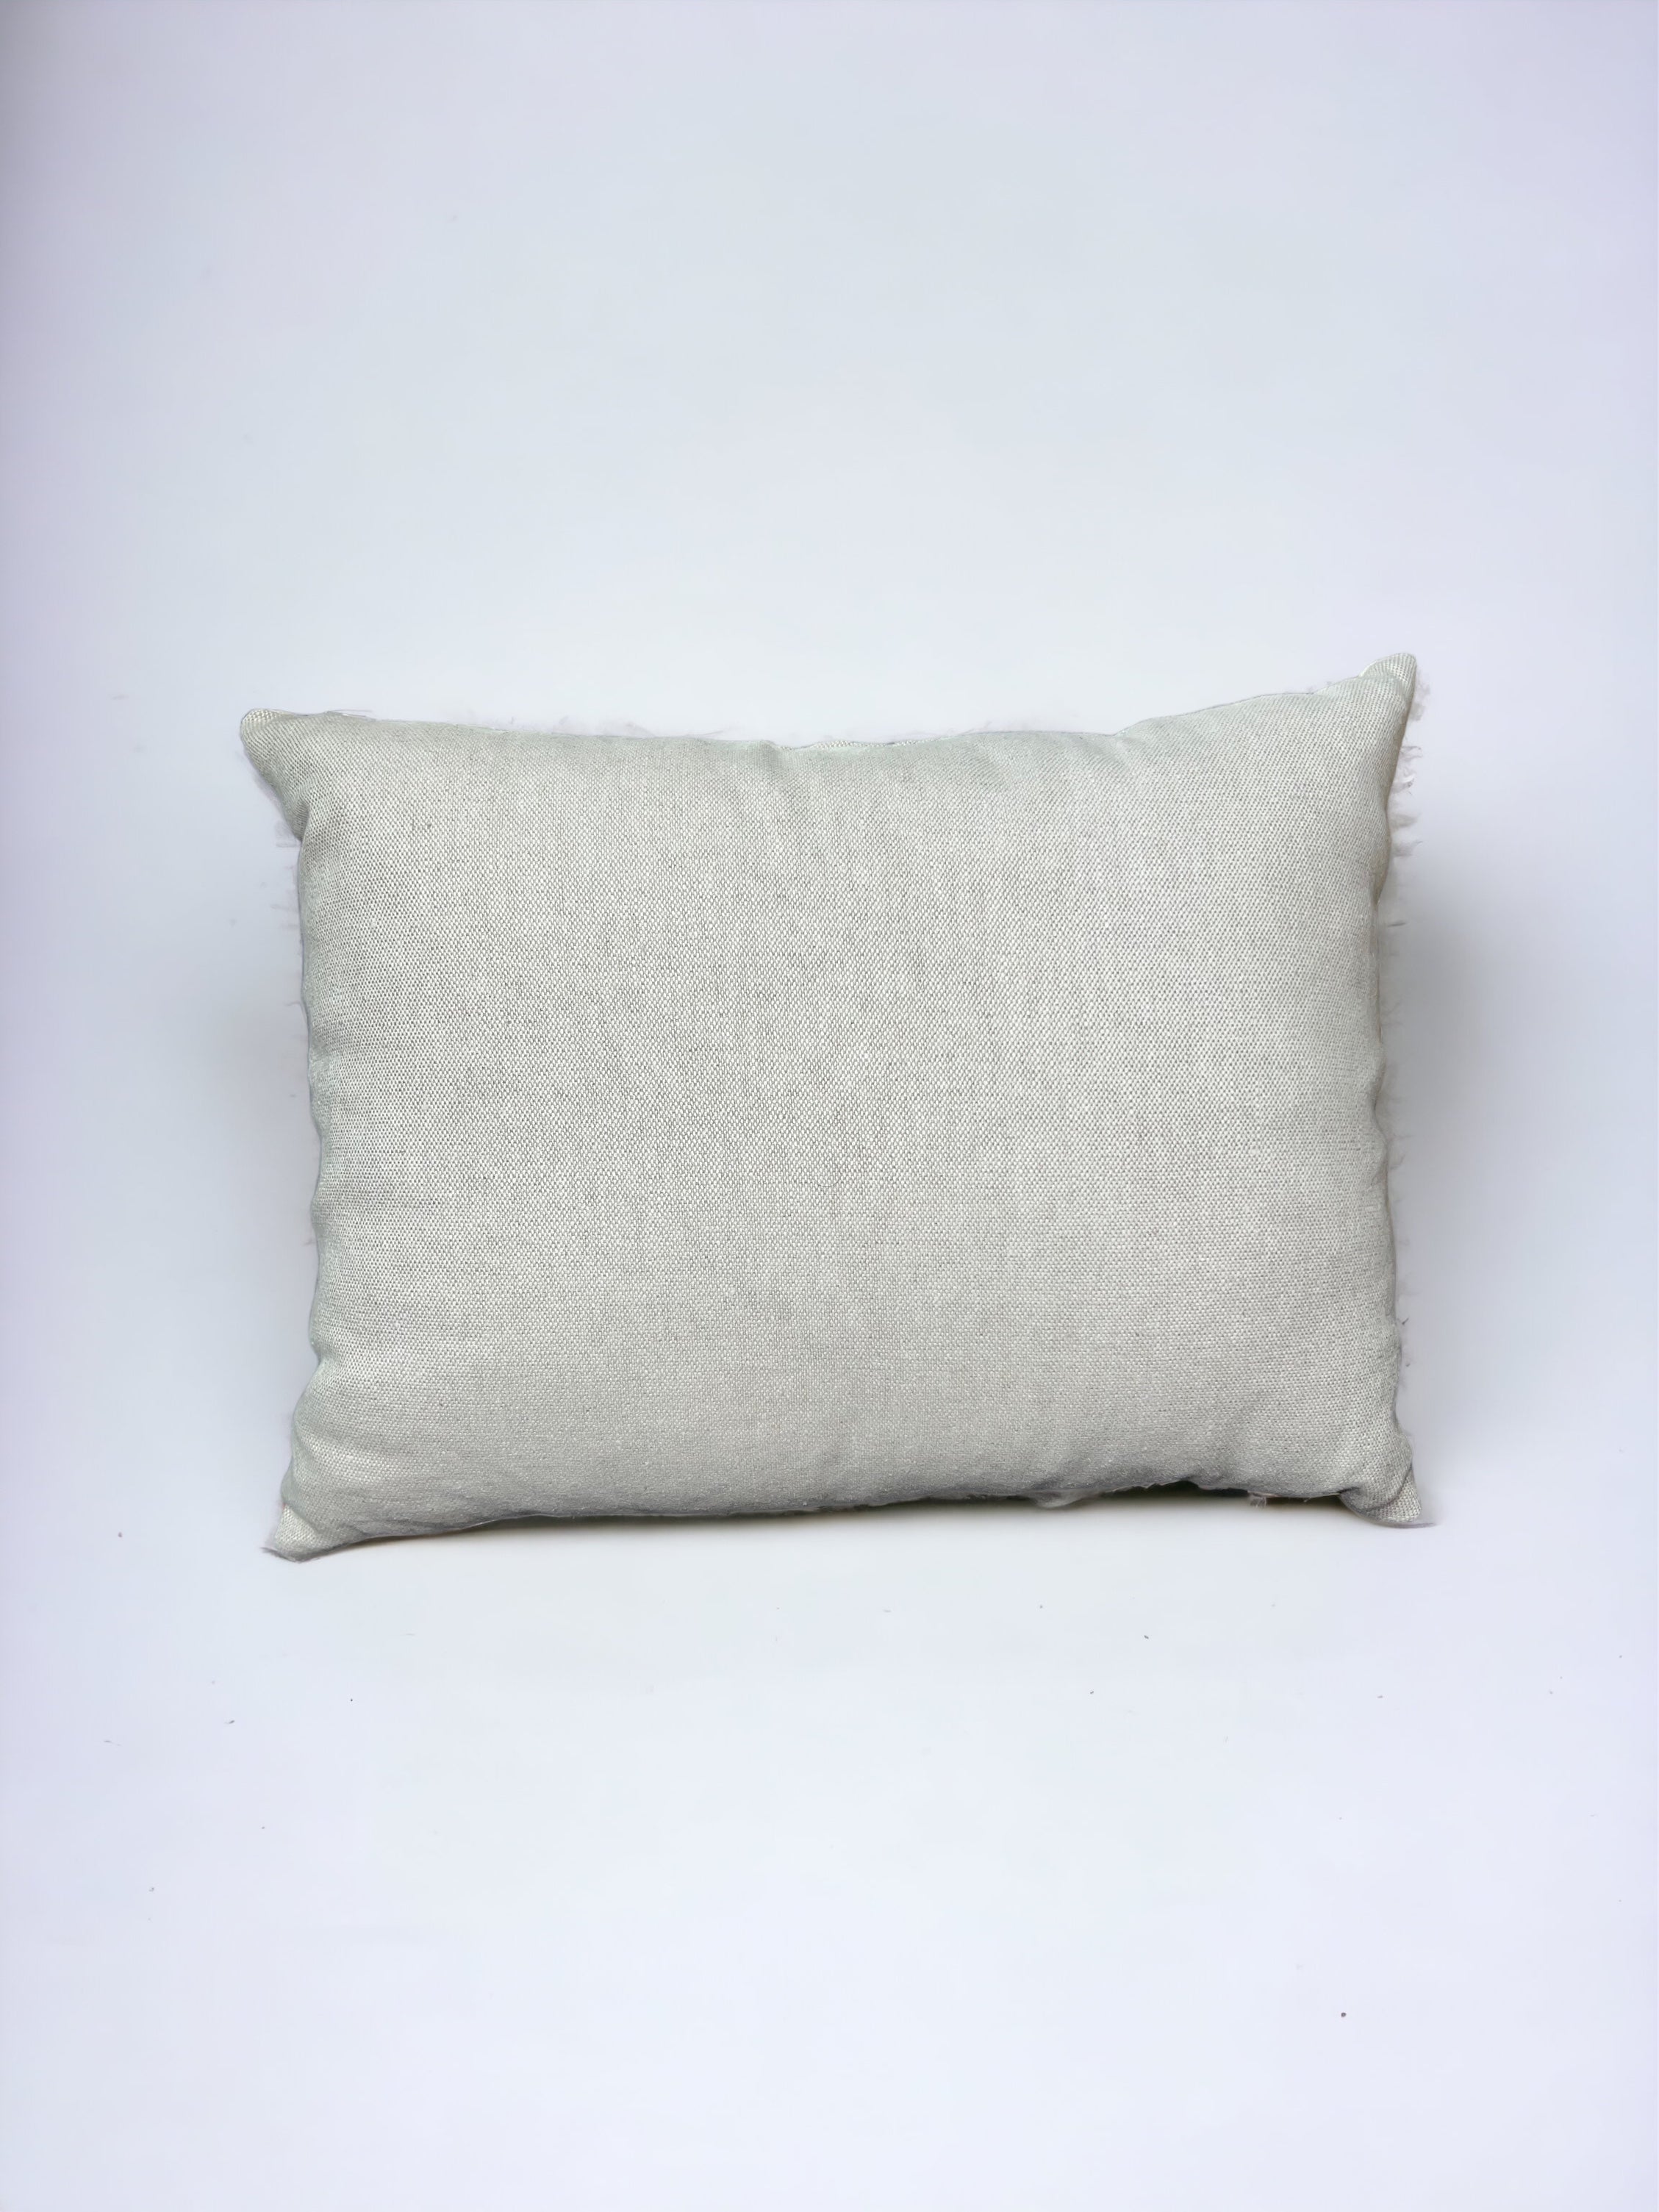 Cream Woven Indian Throw Pillow